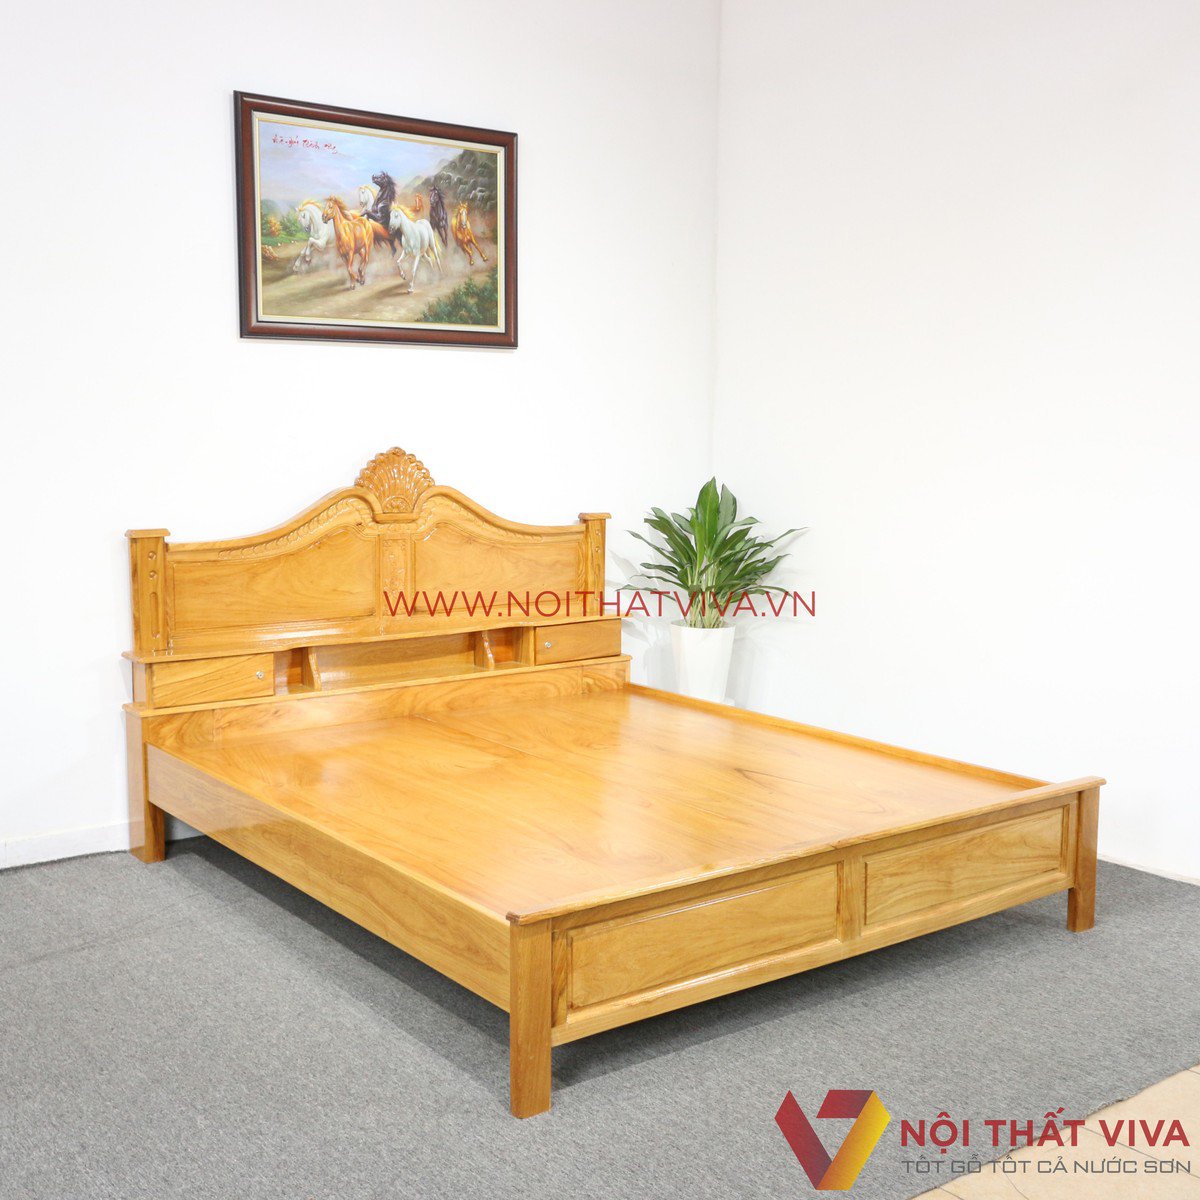 Giường ngủ gỗ gõ đỏ – đẹp sang trọng, tinh tế với chất lượng khẳng định đẳng cấp